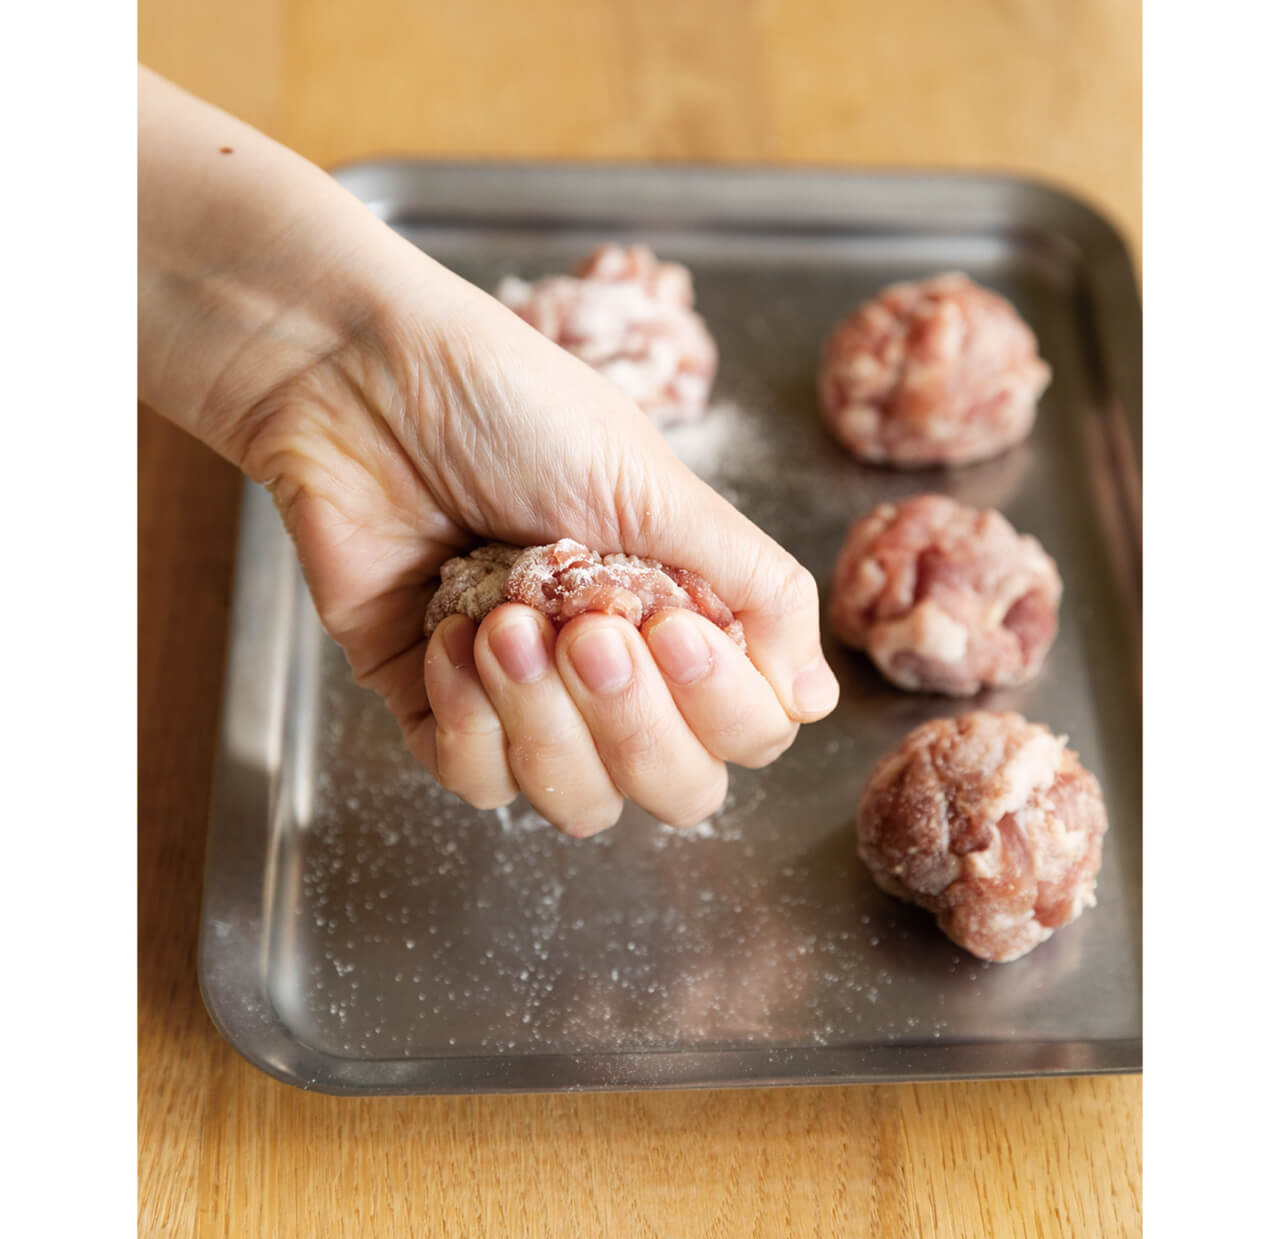 6等分にした豚肉をギュッと握ってボール状に。肉がはがれてくるようなら、表面にも粉をまぶし、形を整えればOK。